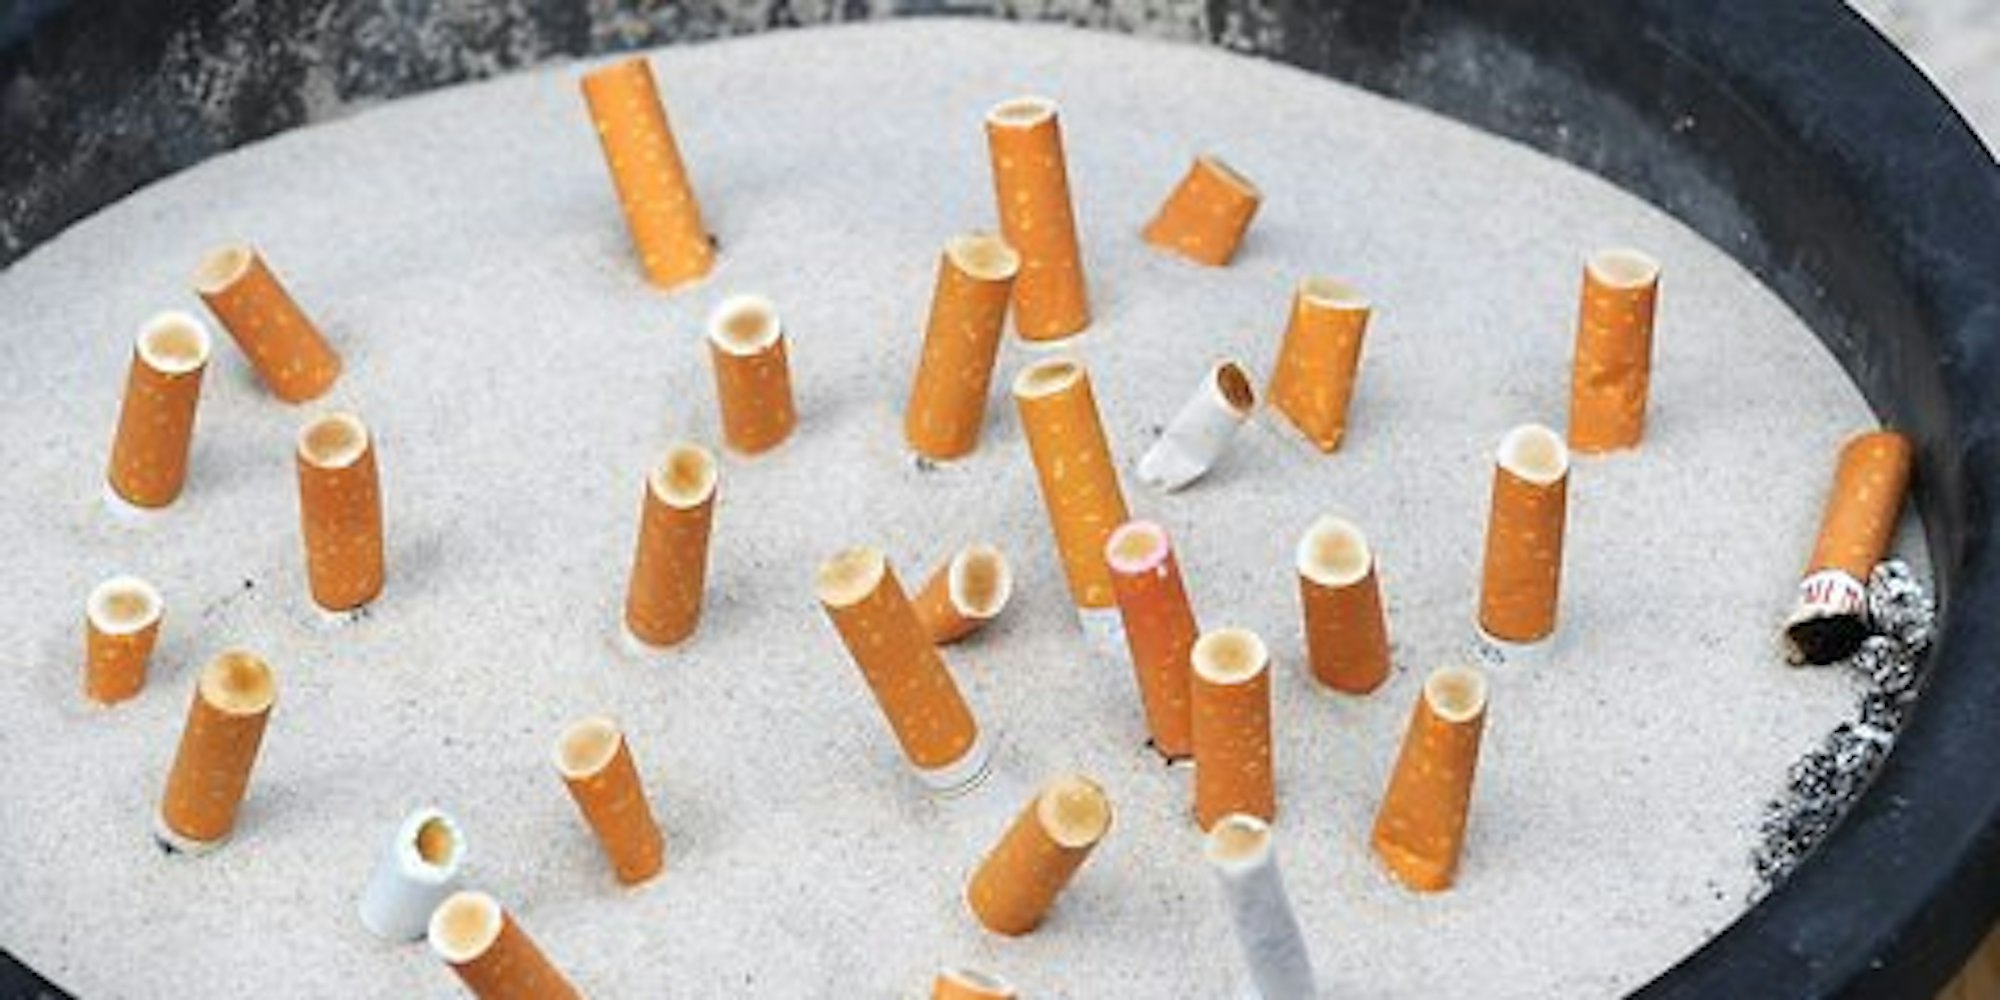 mit rauchen aufhören